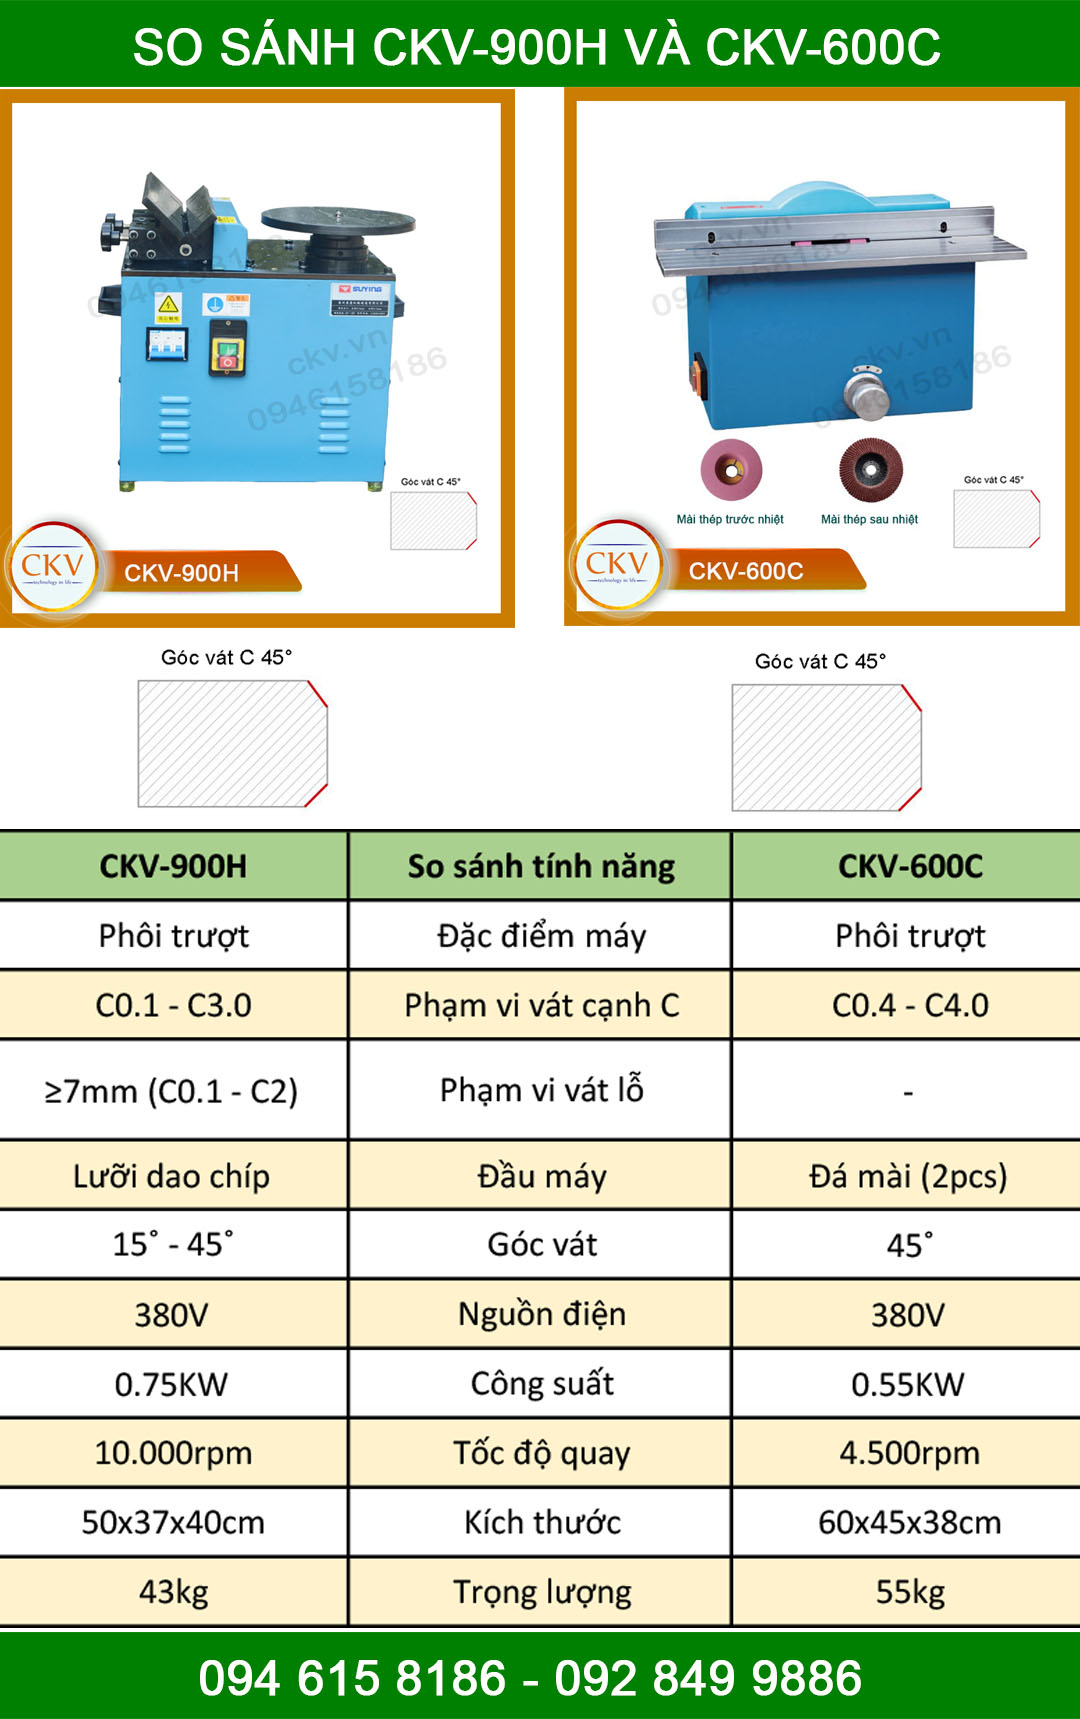 So sánh CKV-900H và CKV-600C